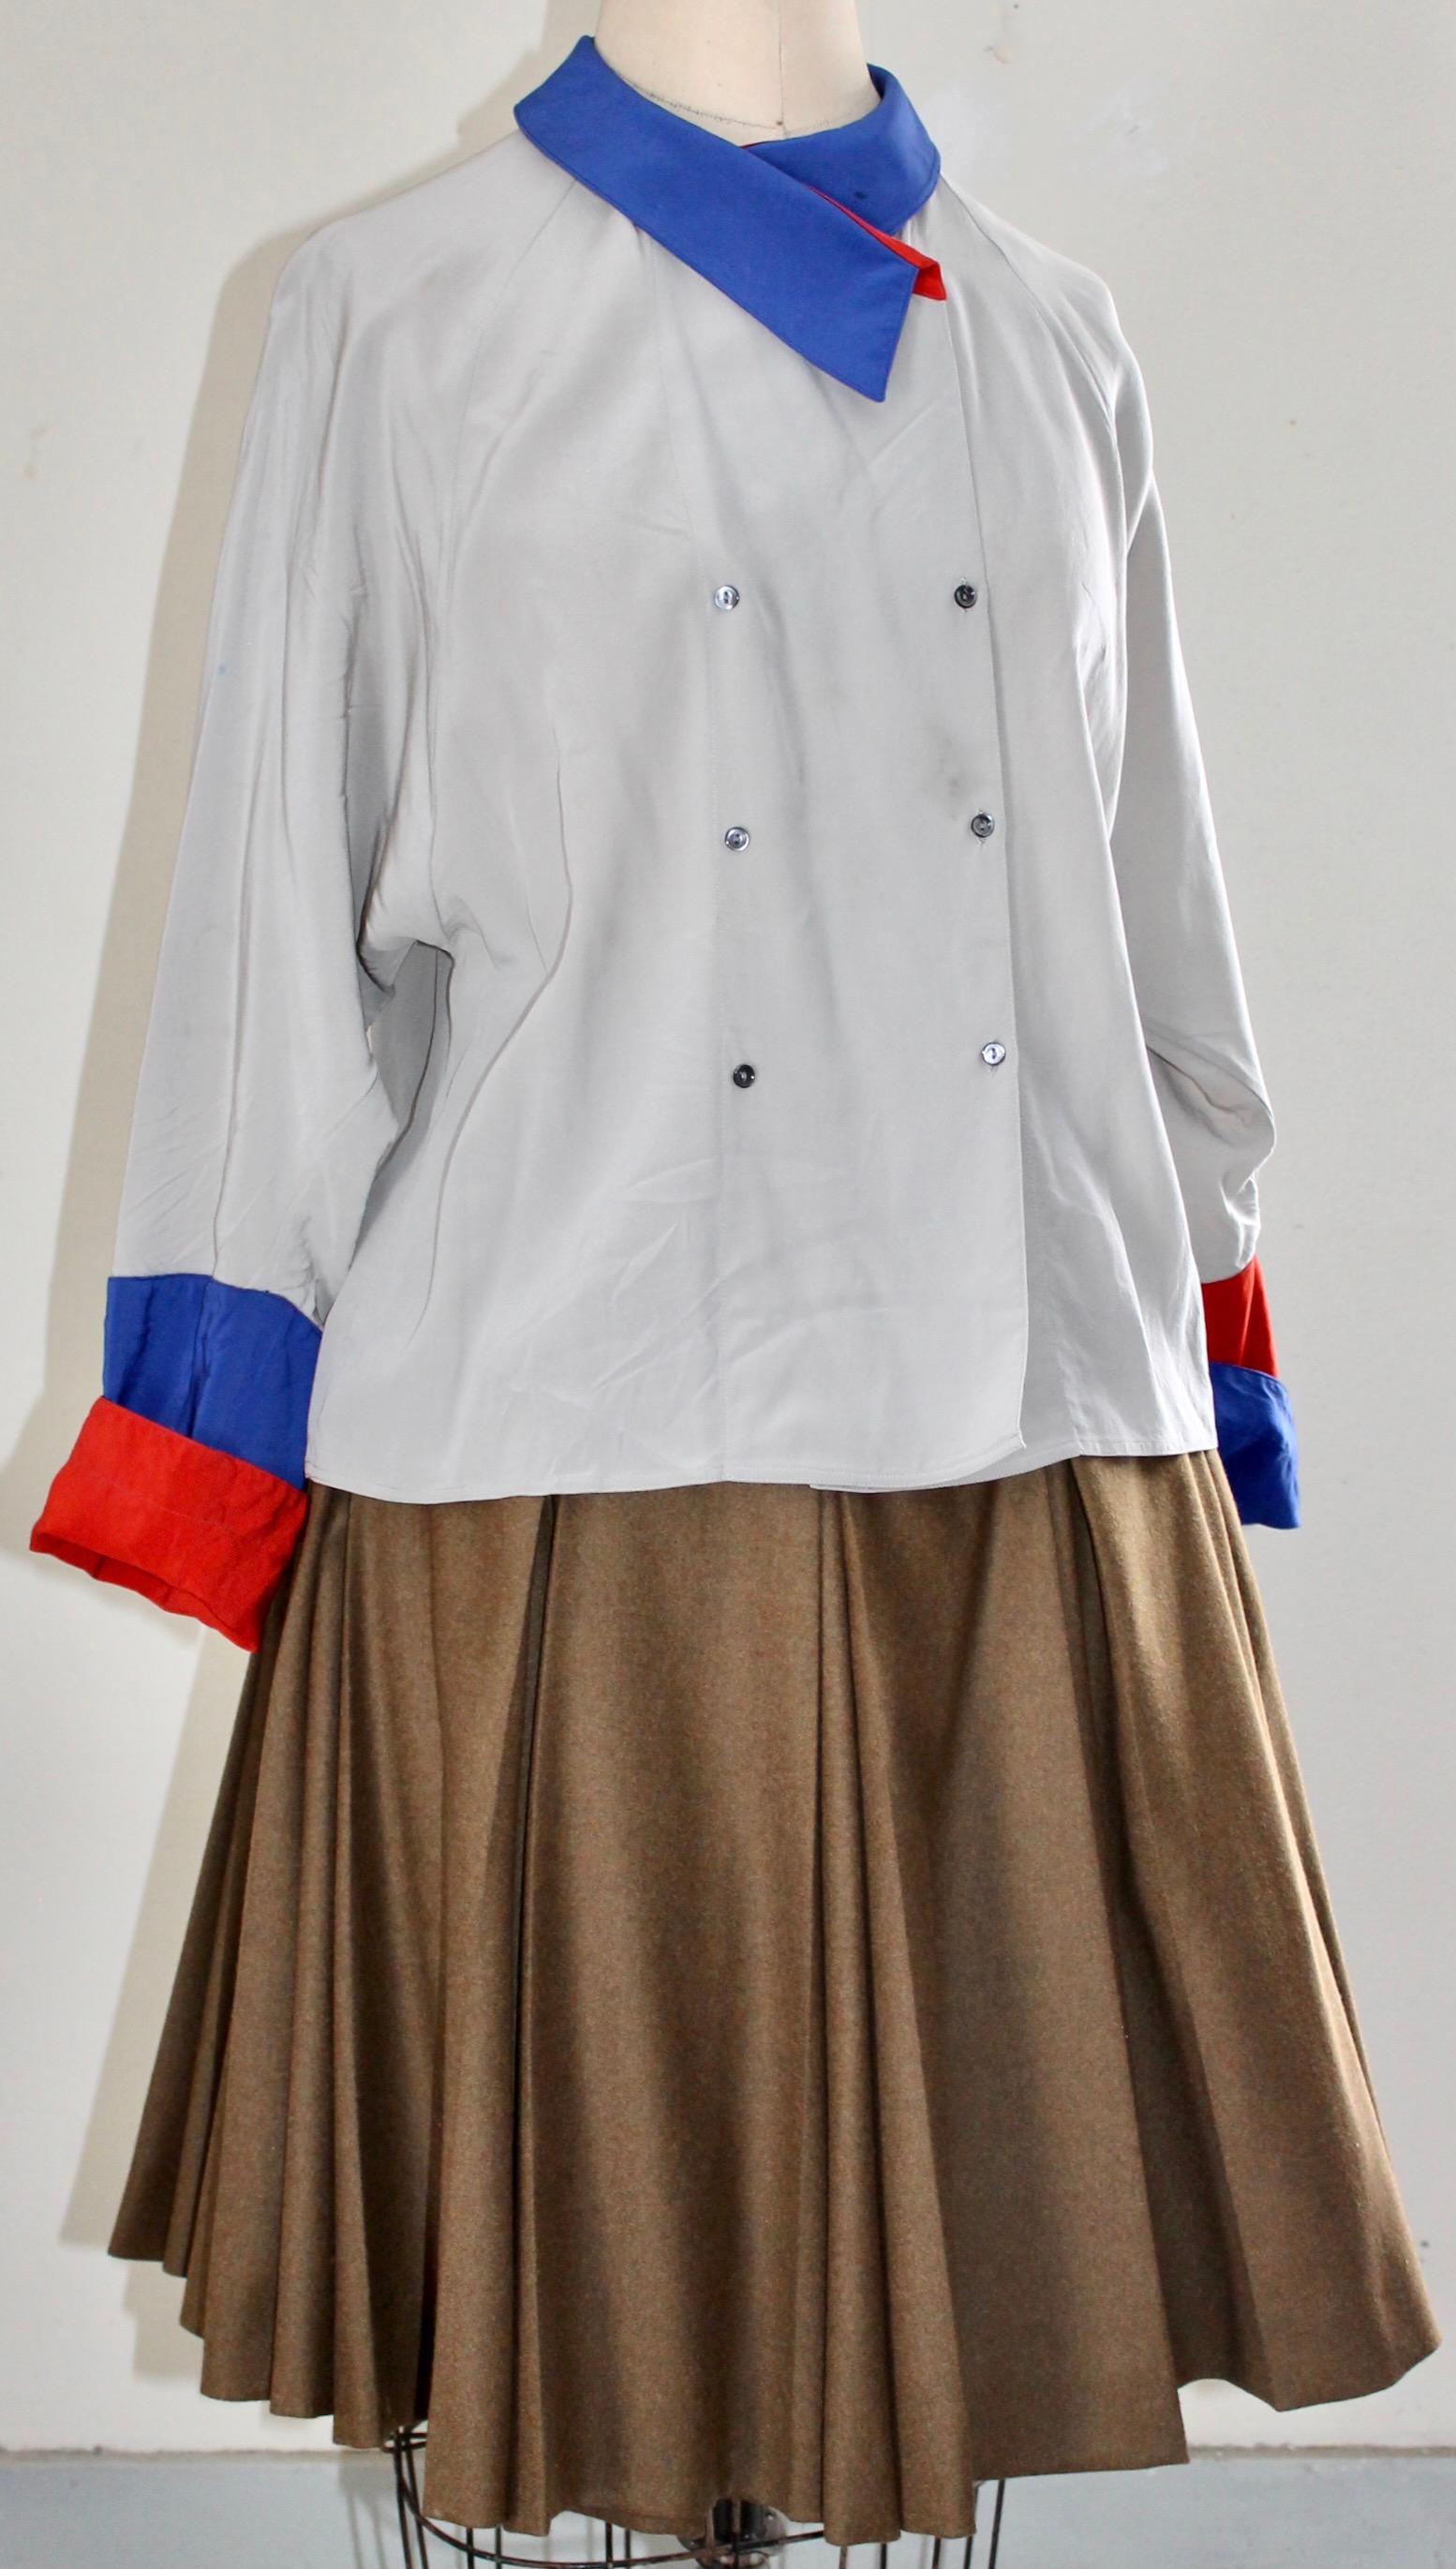 Nutmeg wool pleated, lined military style
skirt.